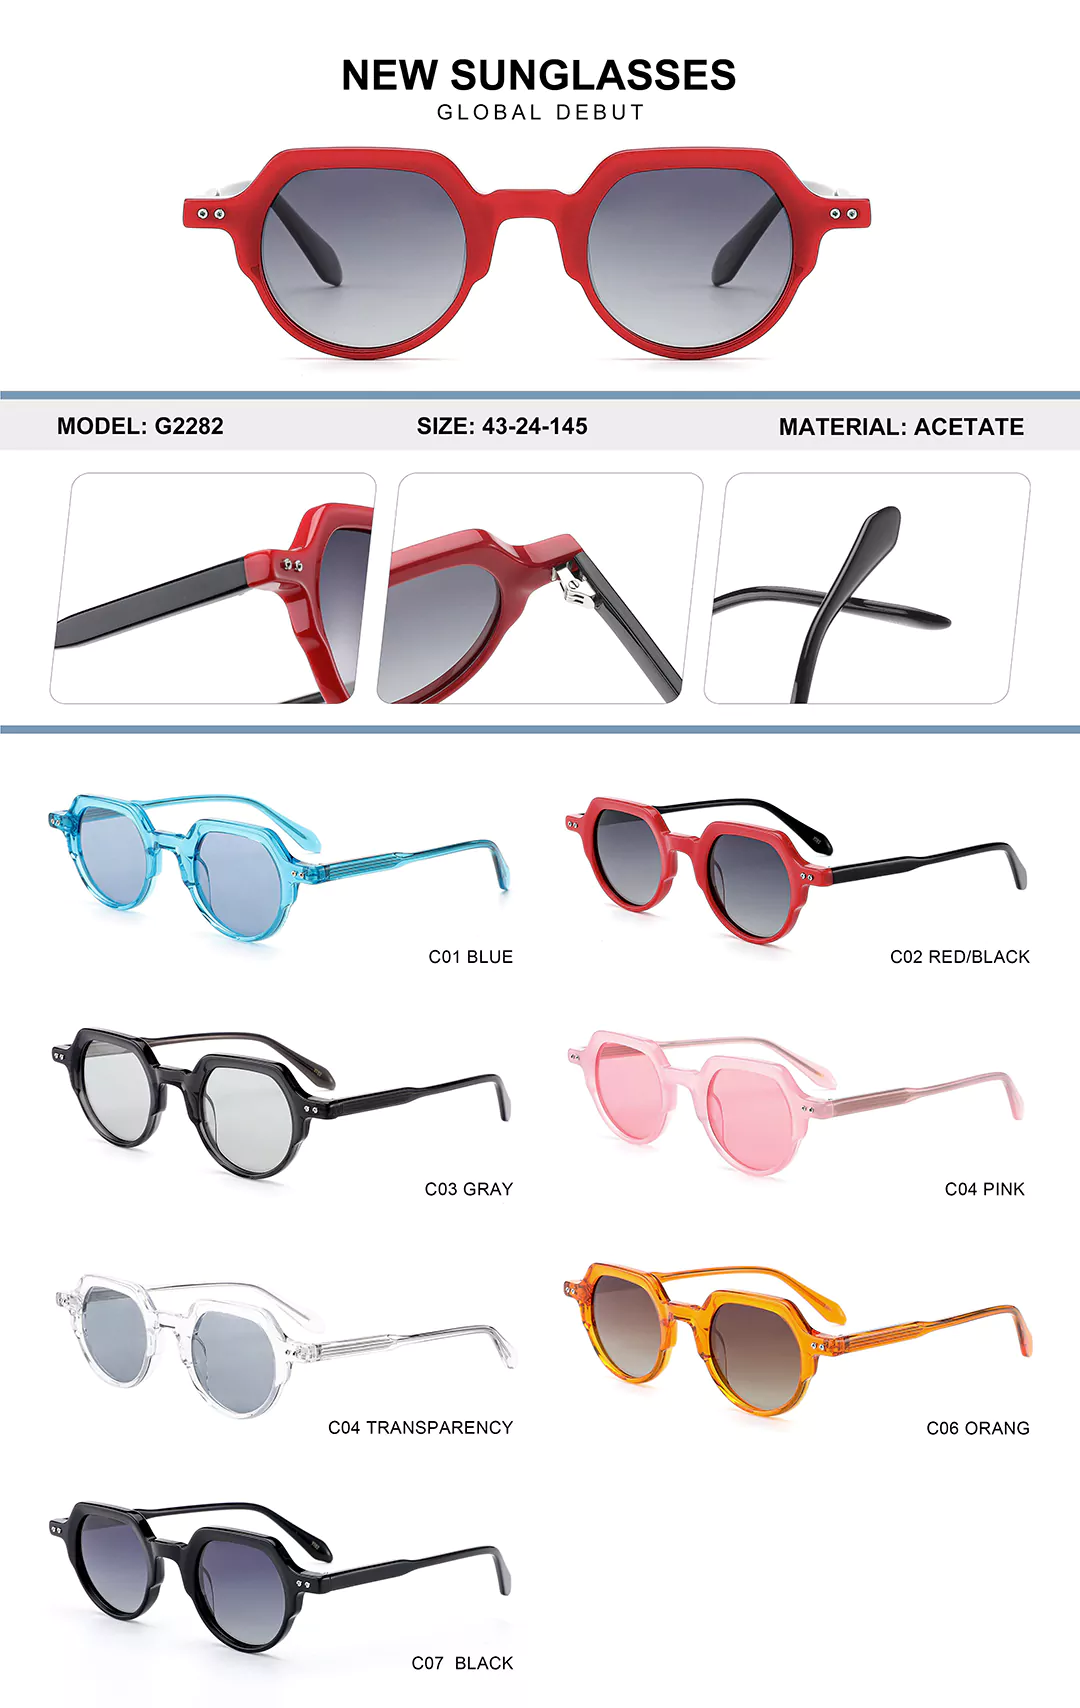 Children's Acetate Glasses G2282 Different colors shown, detail shots, size